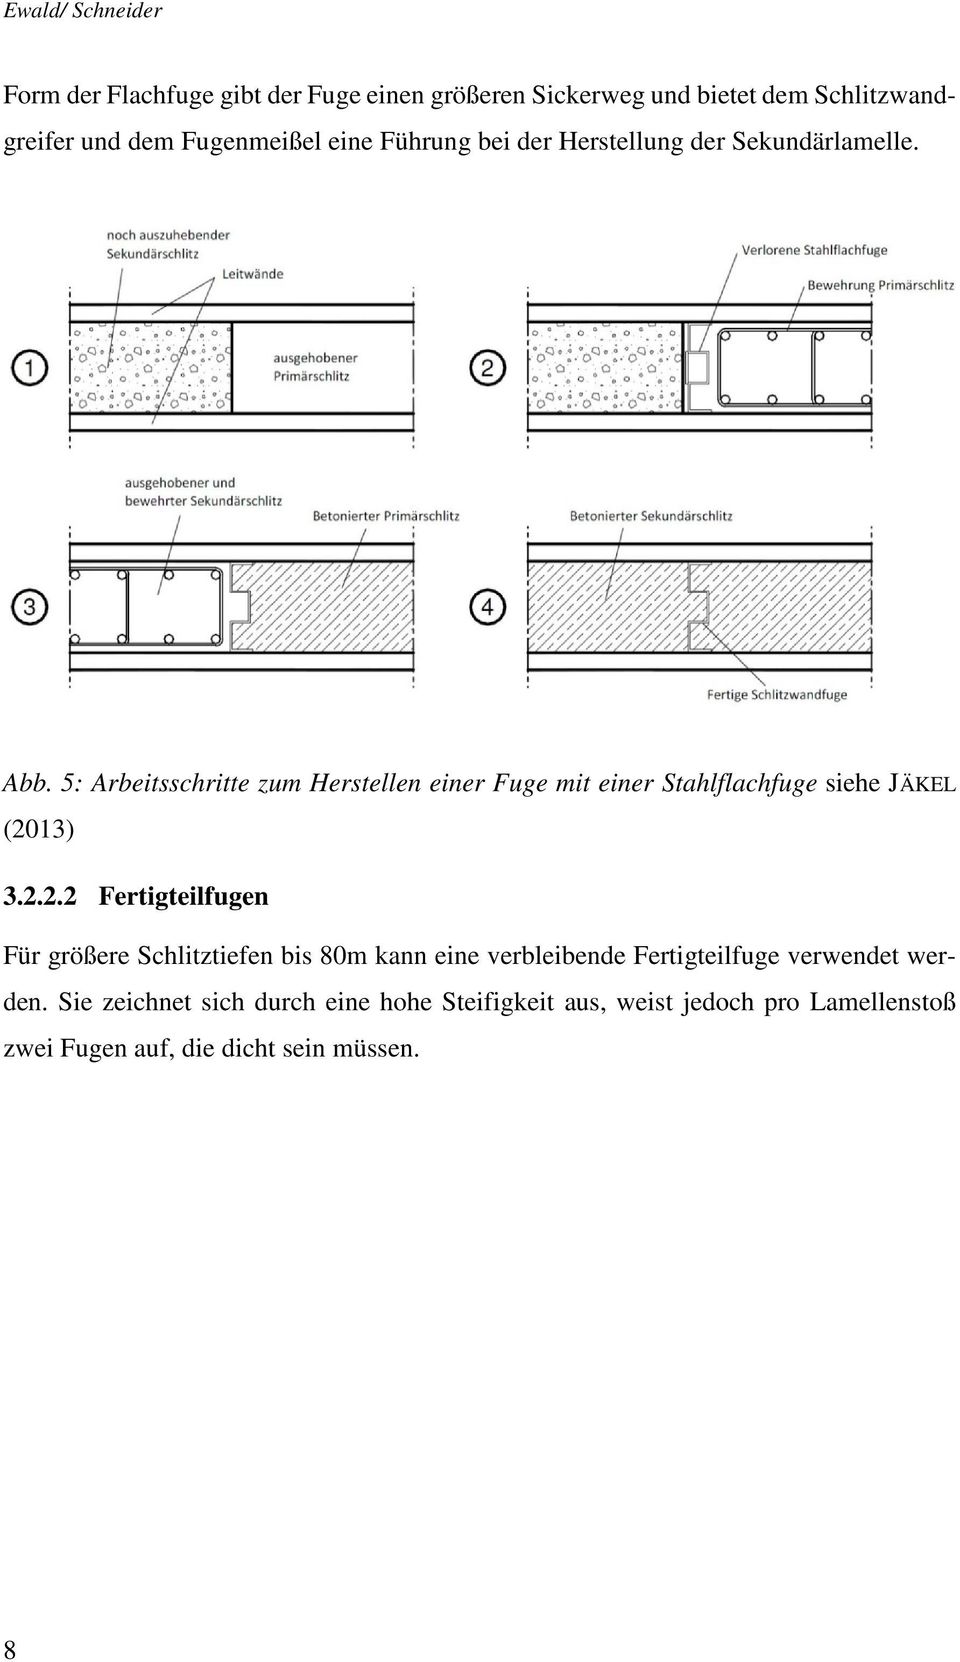 5: Arbeitsschritte zum Herstellen einer Fuge mit einer Stahlflachfuge siehe JÄKEL (20